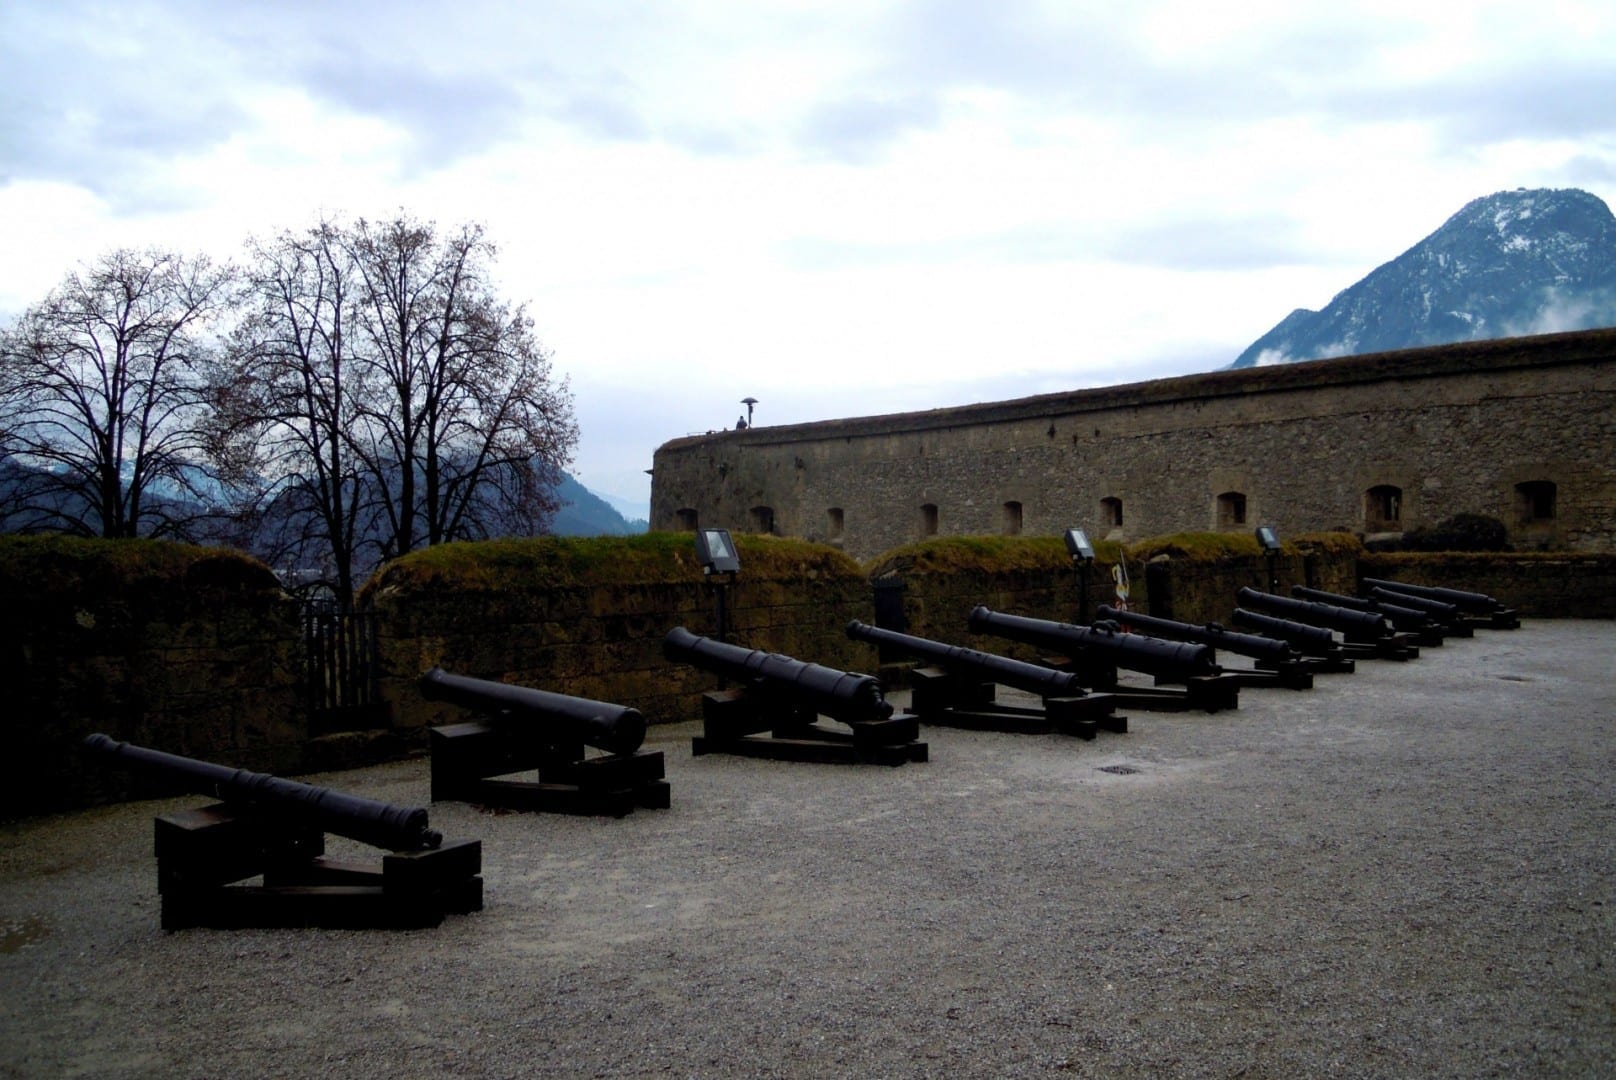 Piezas de artillería defendiendo la Fortaleza Kufstein, con las montañas alpinas al fondo. Kufstein Austria